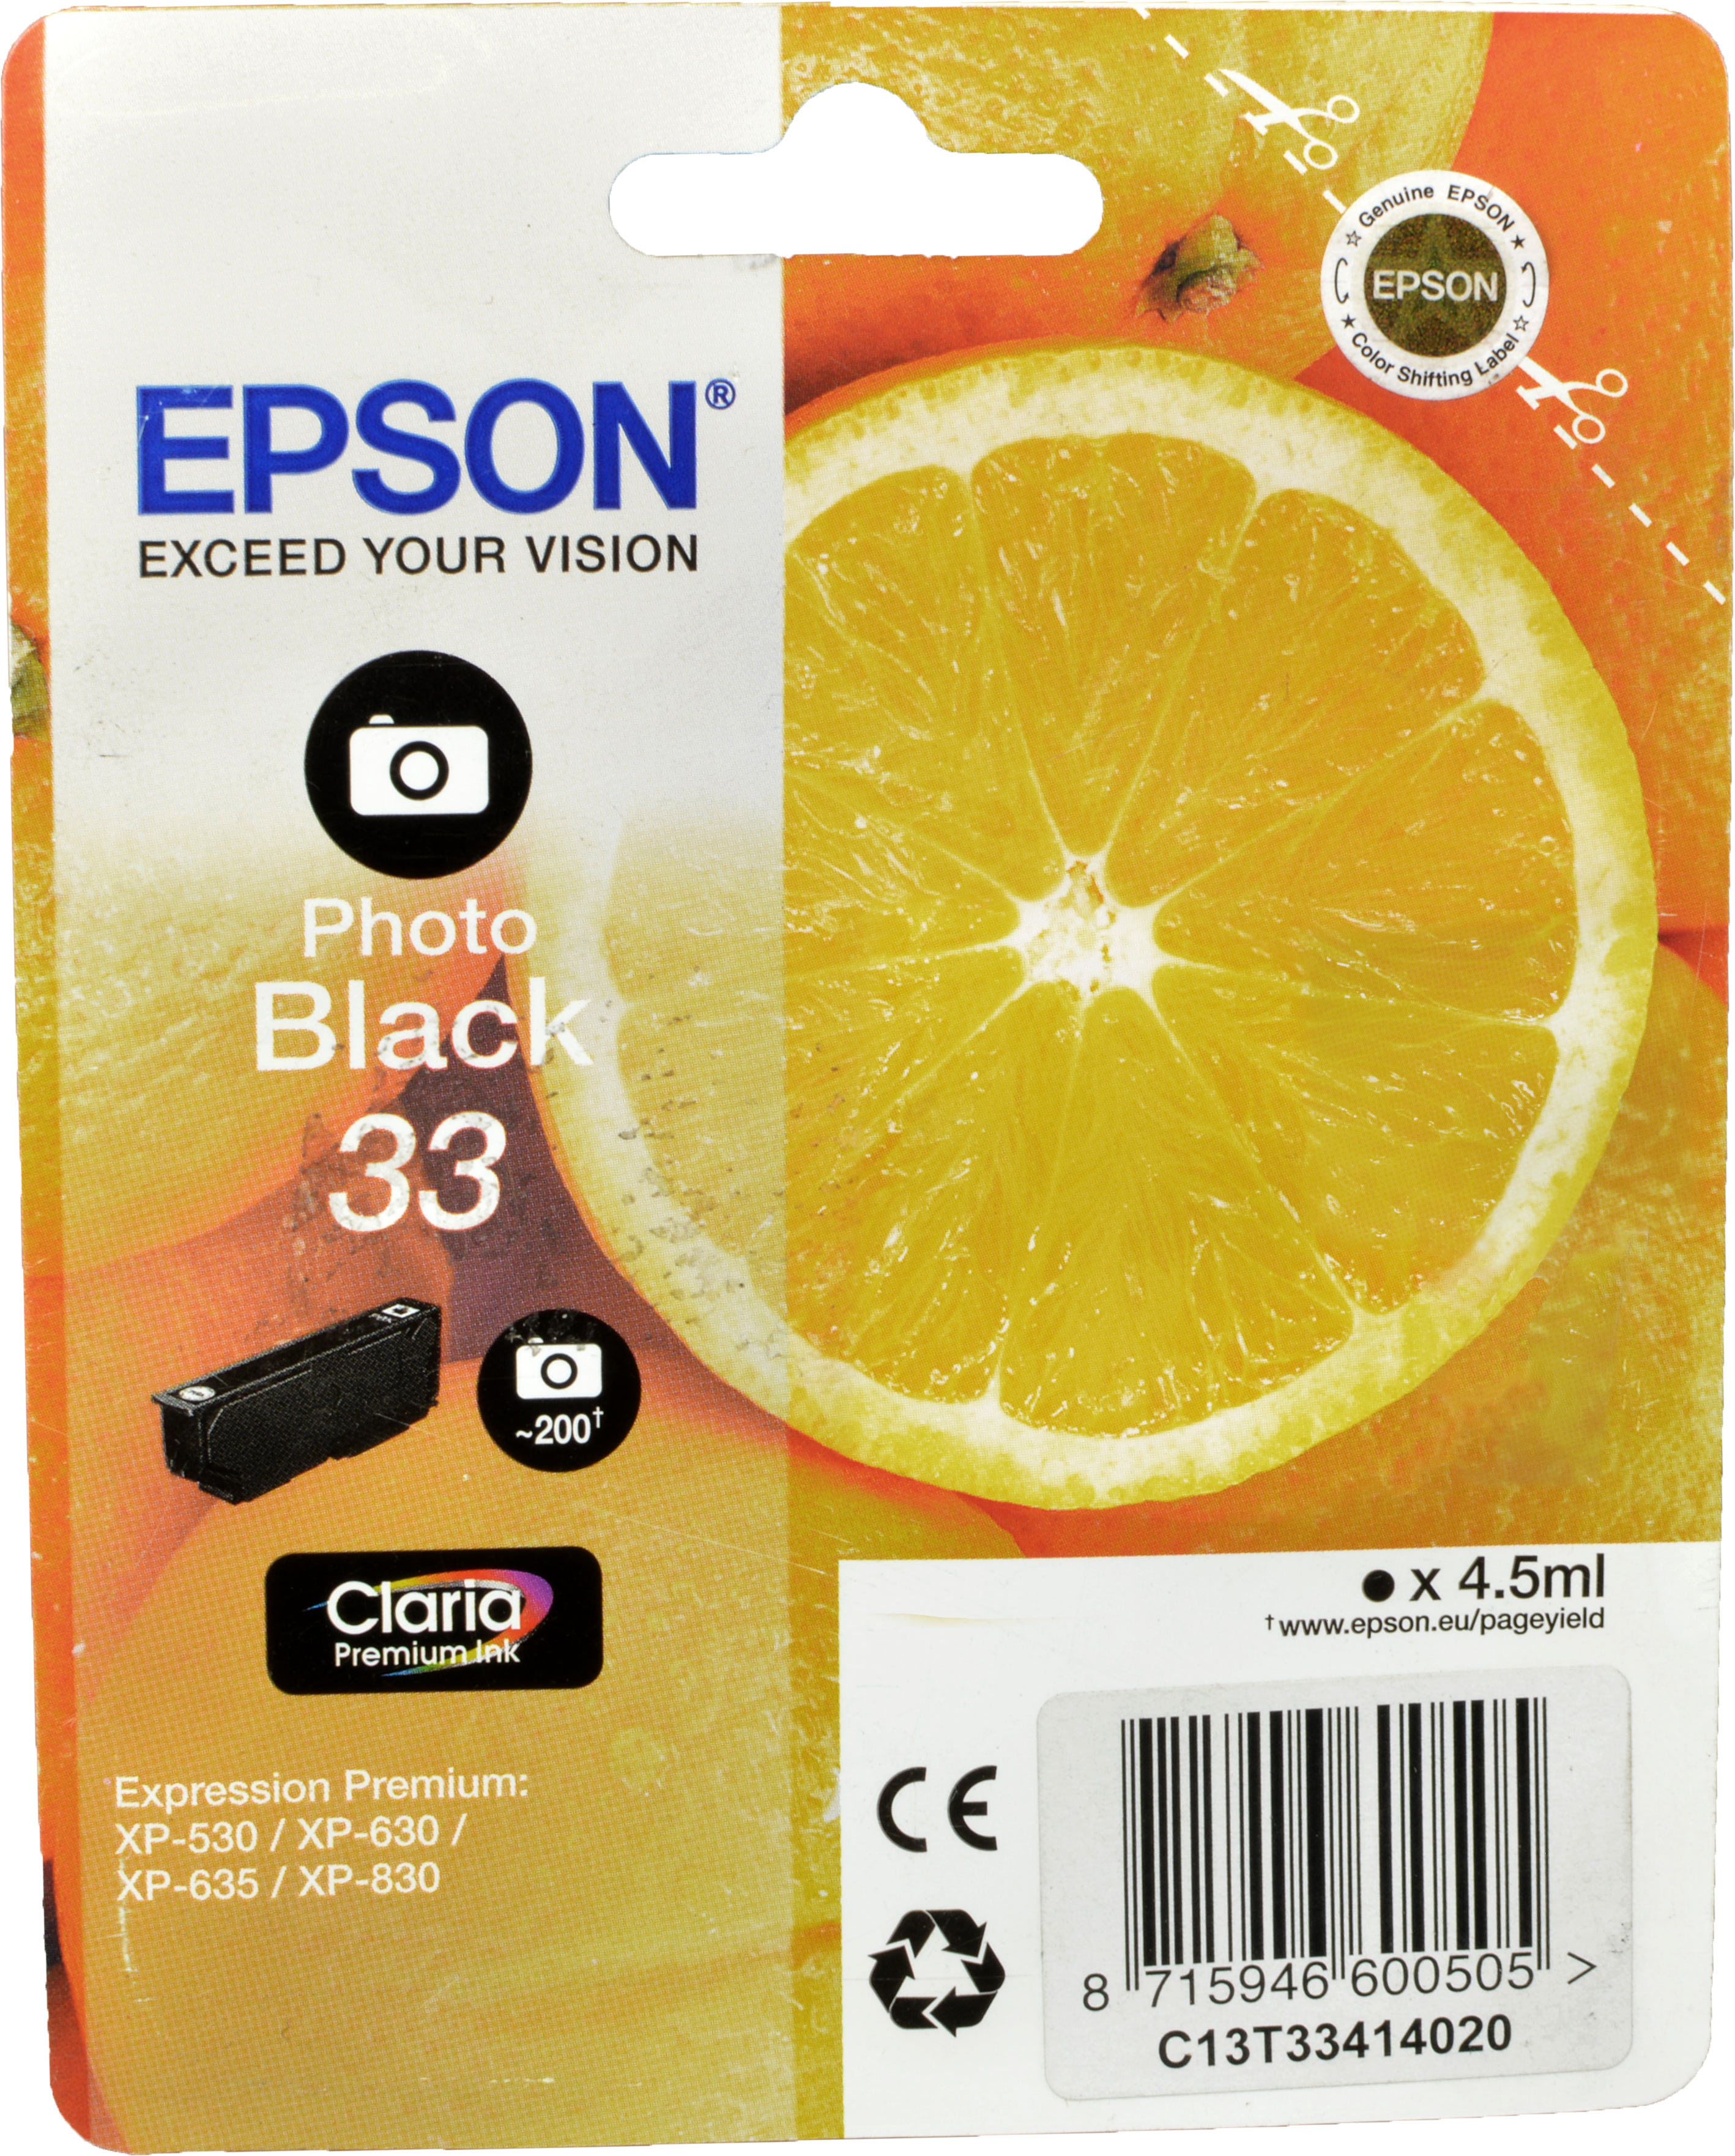 Epson Tinte C13T33414012 Photo Black 33  foto schwarz